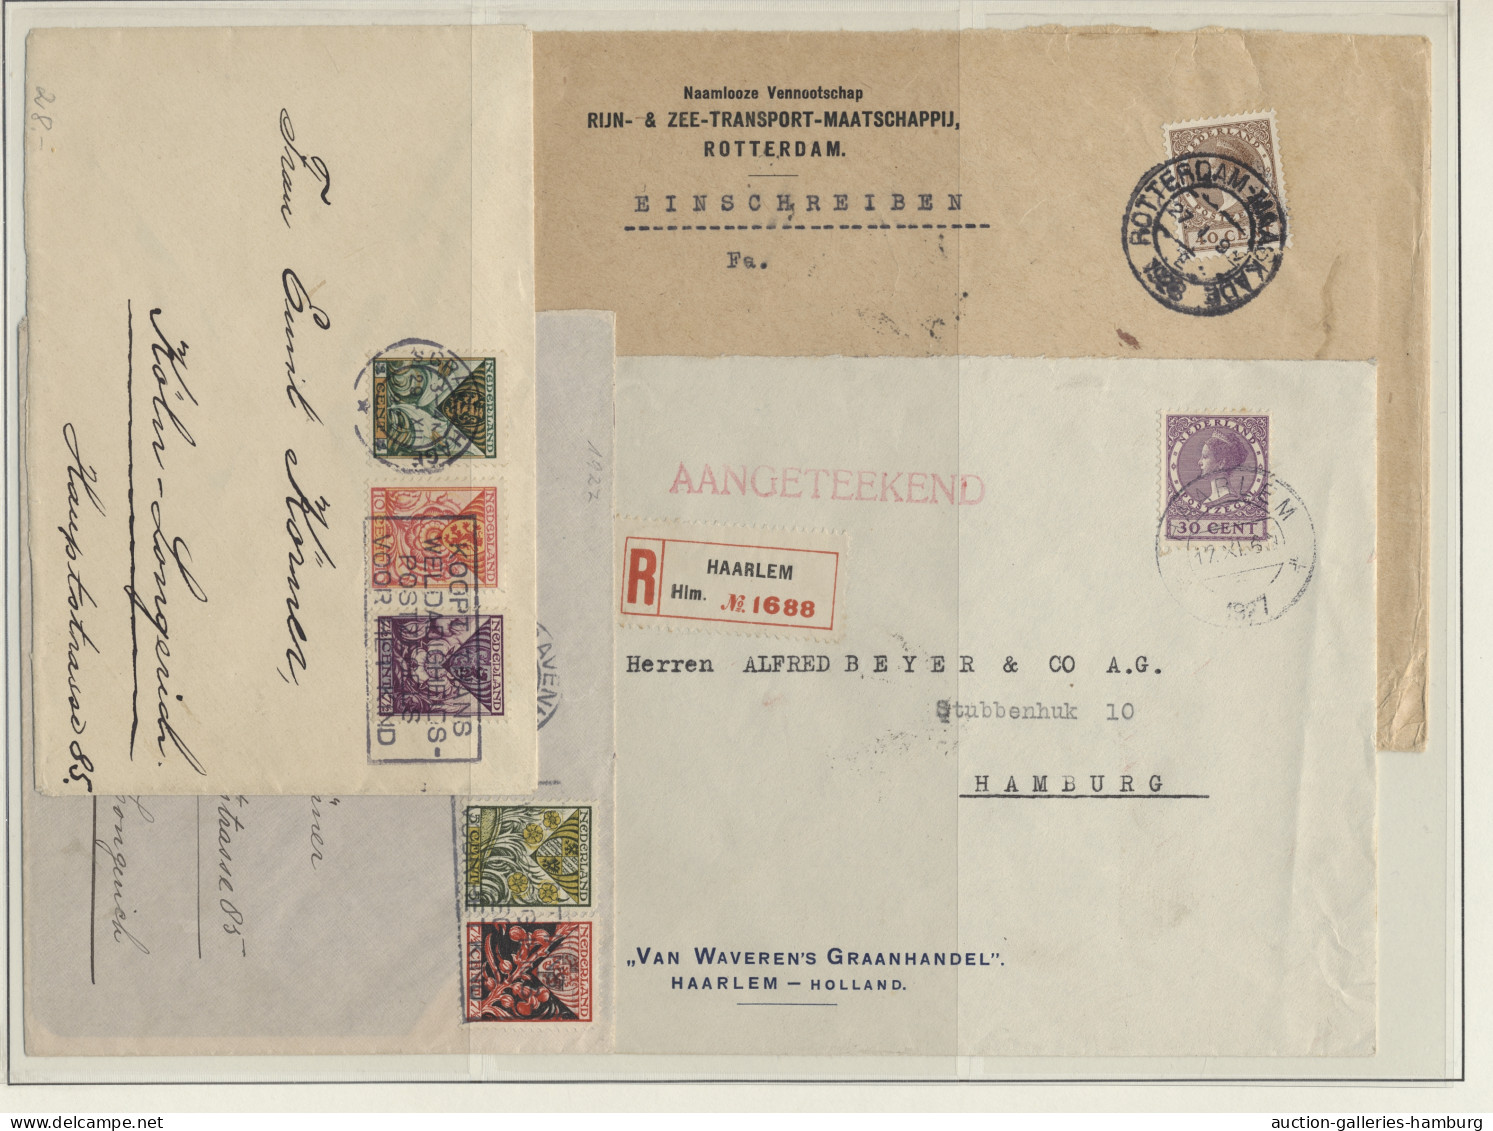 Cover/GA Netherlands: 1842-1991, BELEGE, rund 280 Stück ab einigen Vorphilabriefen, viele